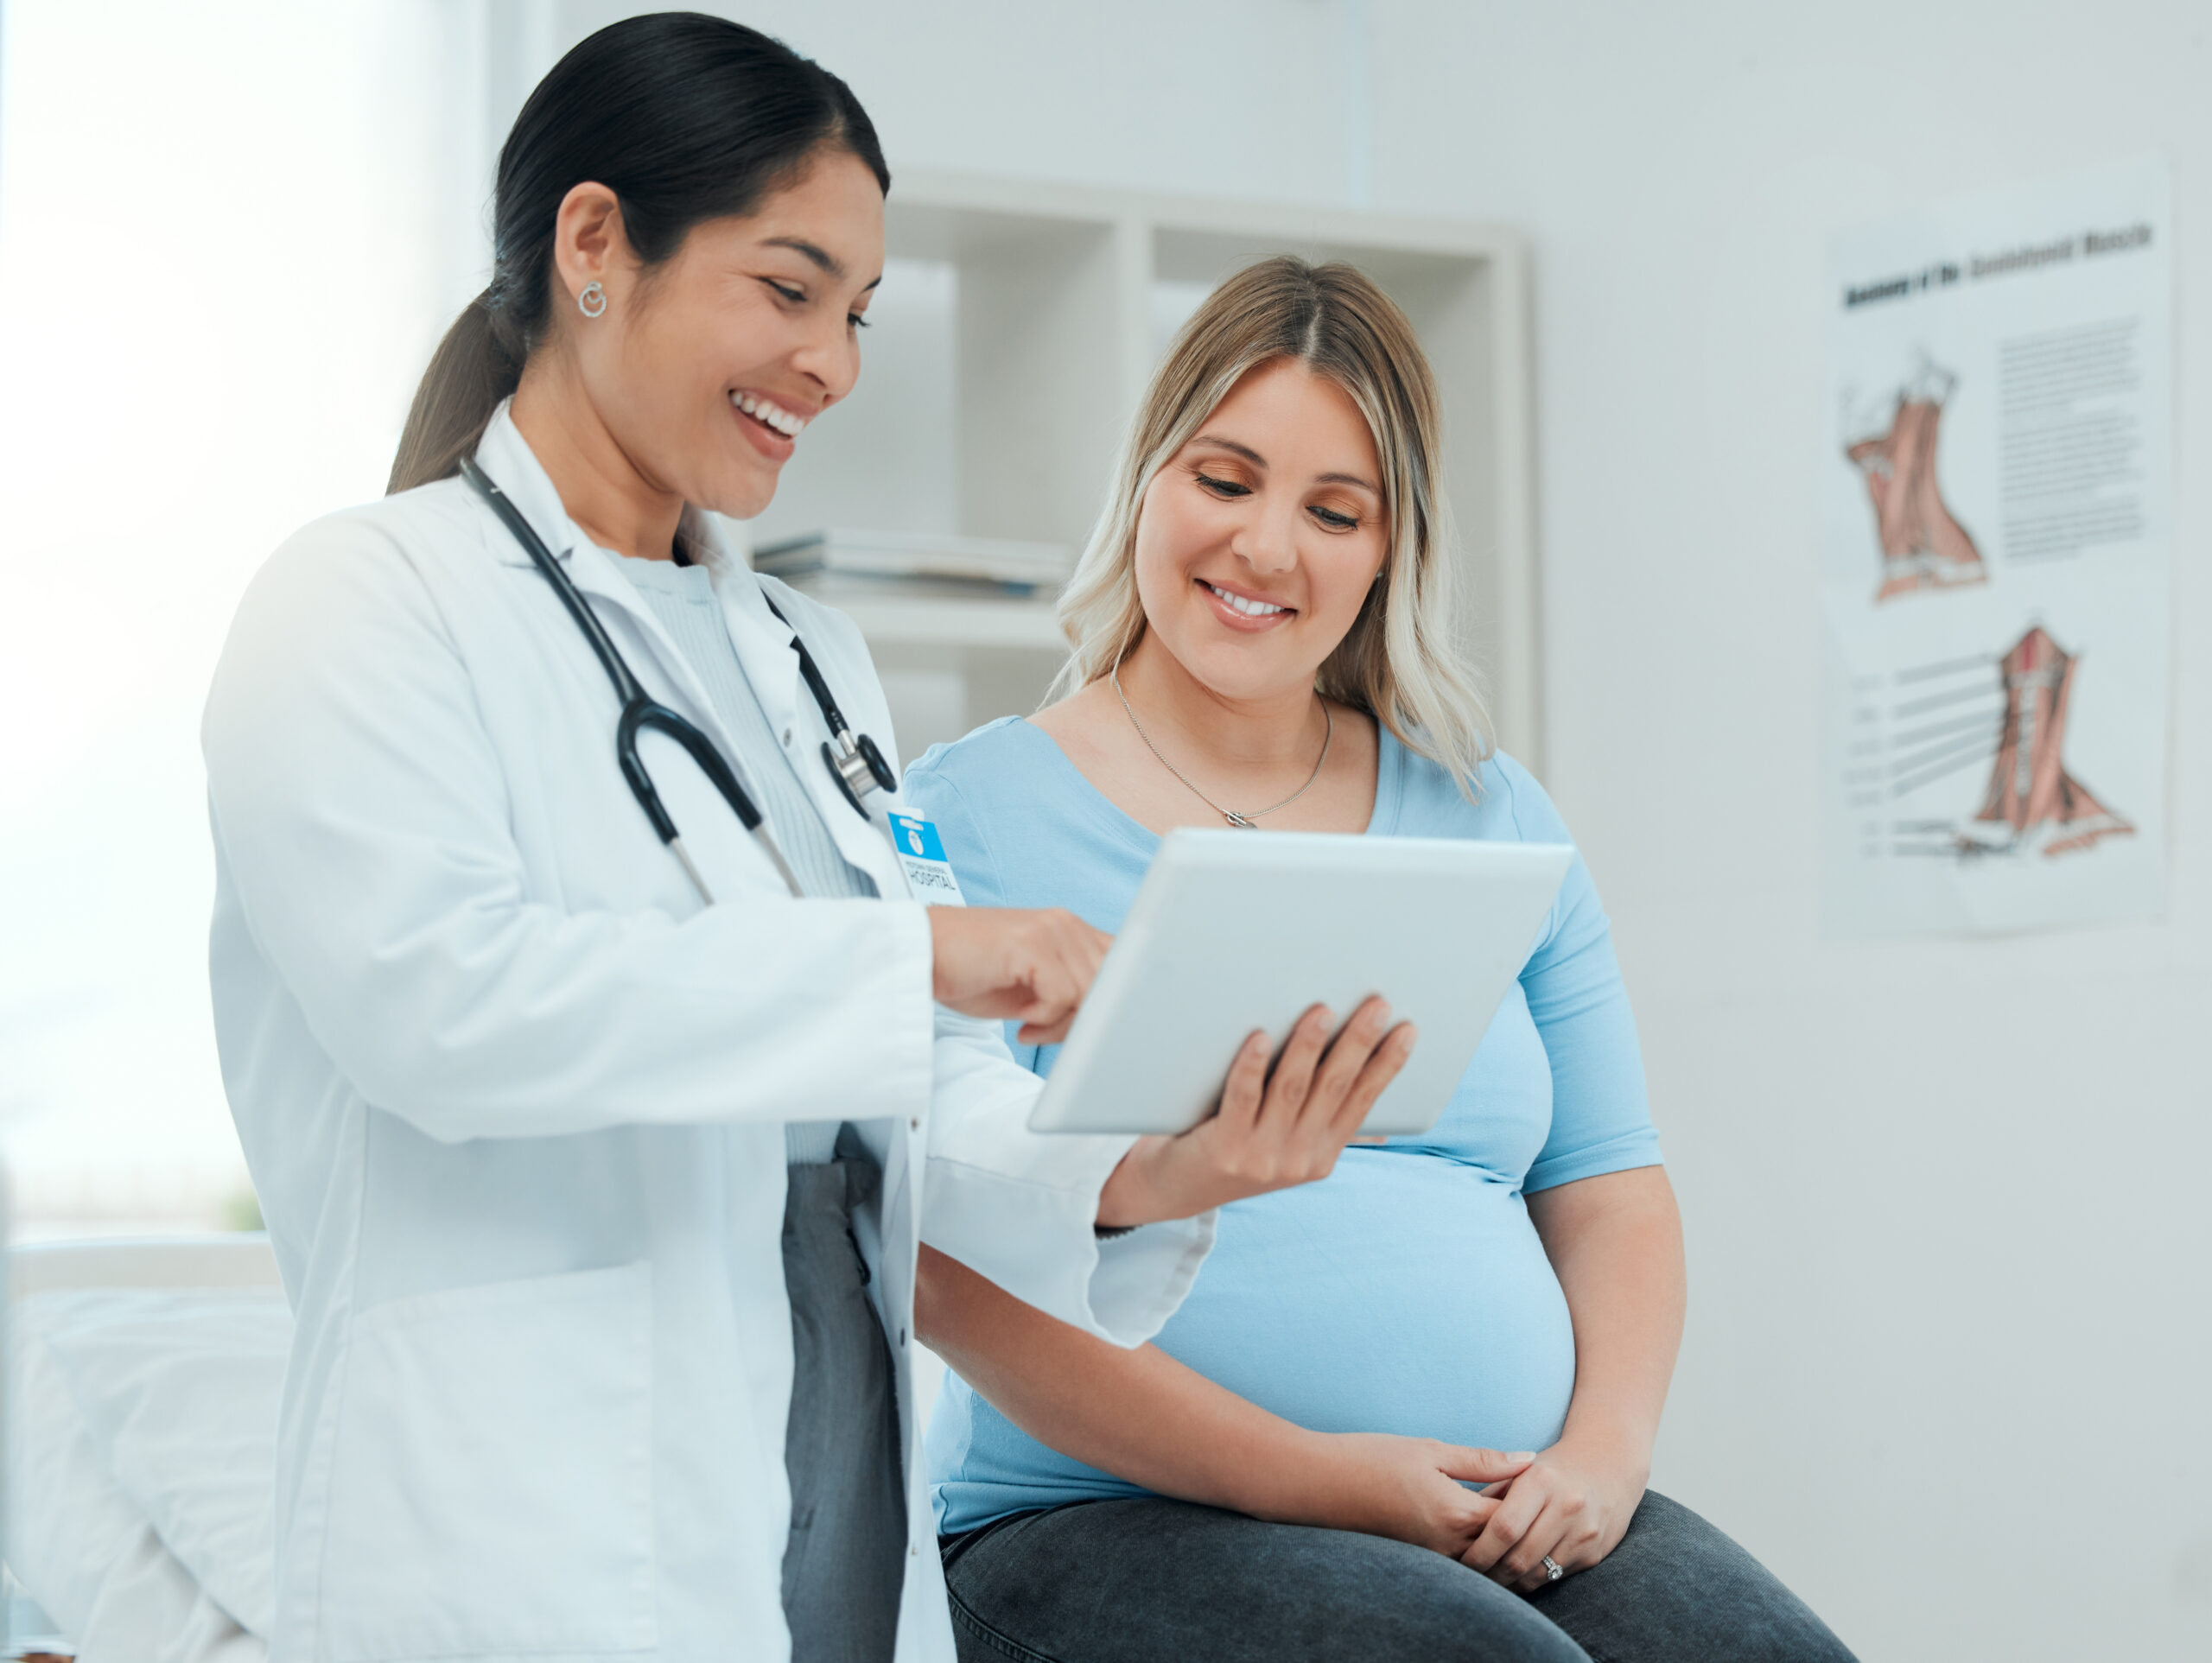 El médico muestra el panel táctil a una paciente embarazada.